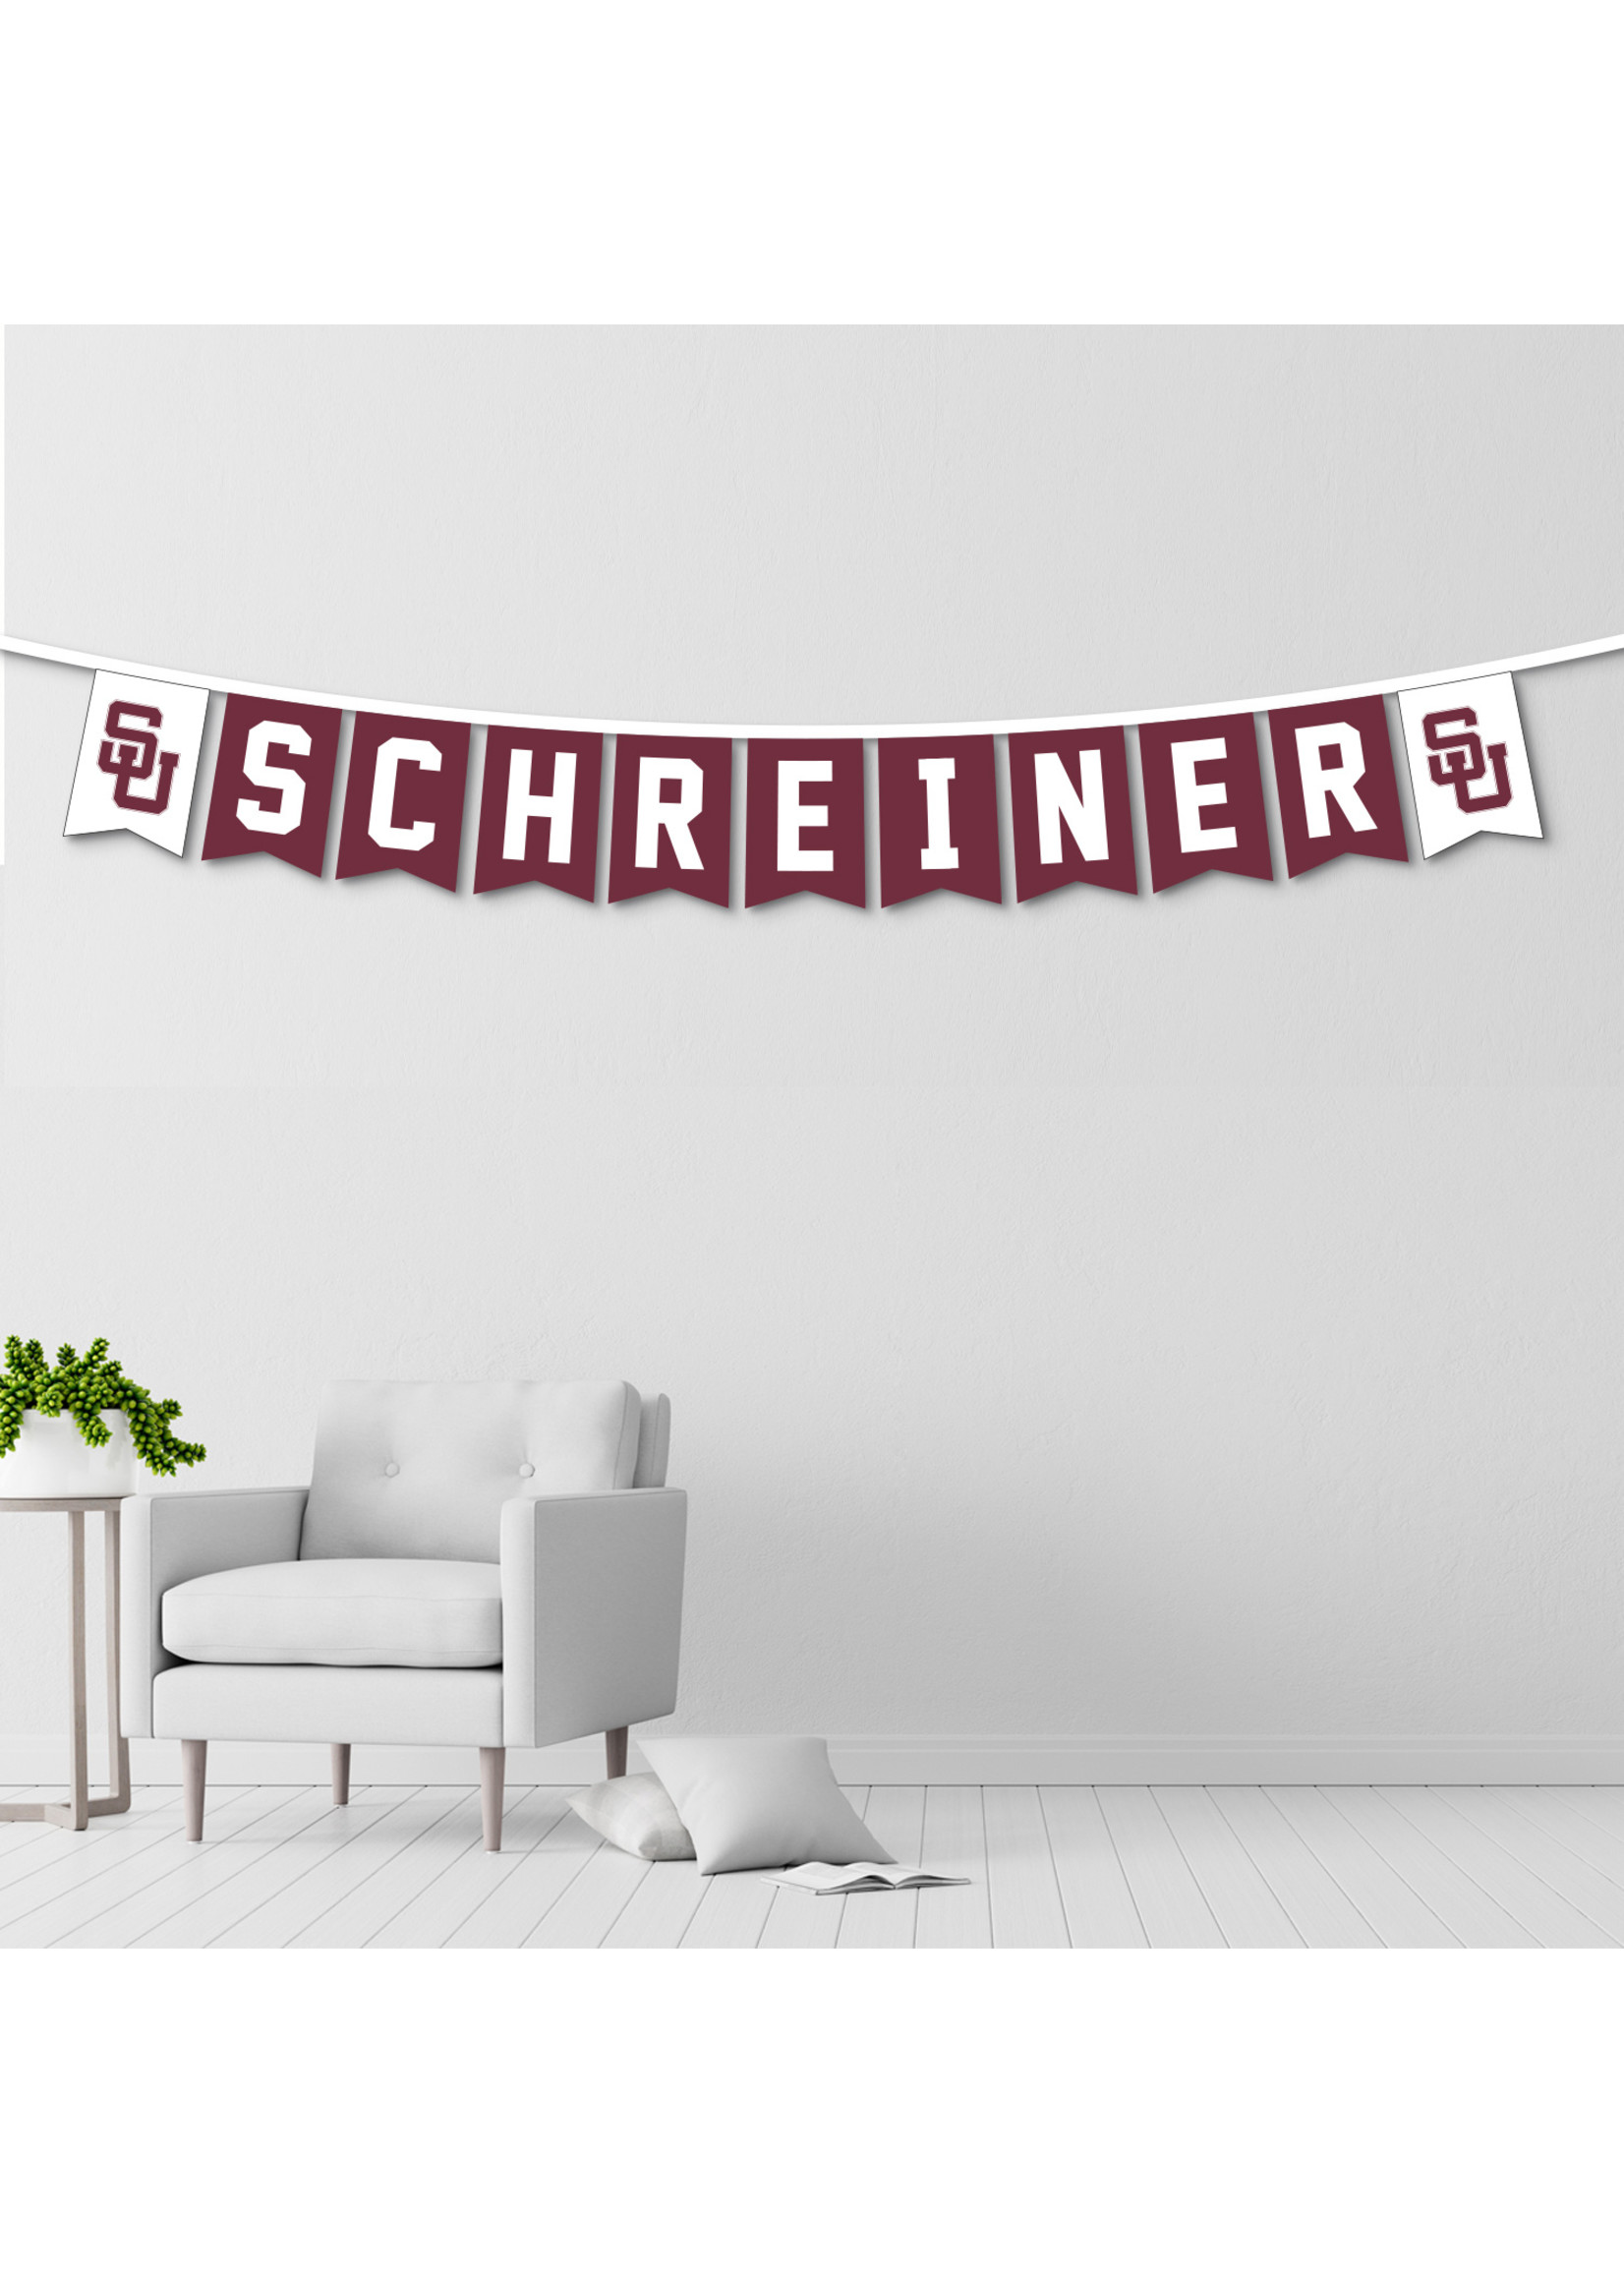 Schreiner Flag String Banner - Schreiner Outfitters Campus Retail Store